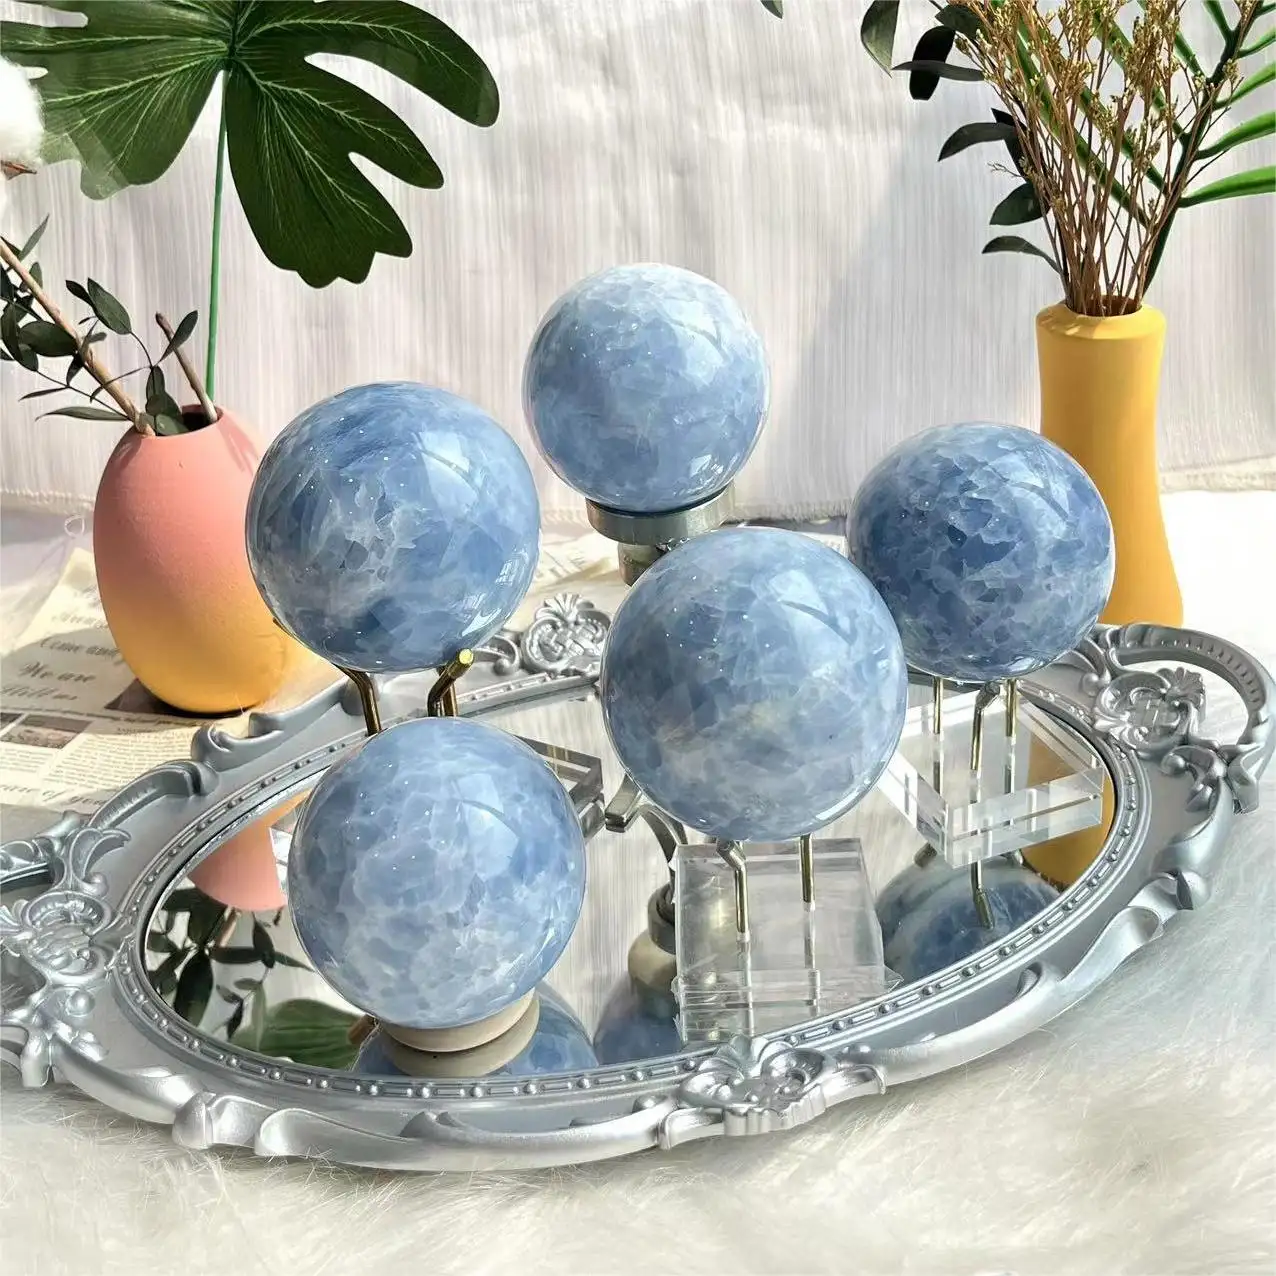 كرة بلورية زرقاء طبيعية بسعر المصنع، أحجار علاجية بالجملة، كرة كالكتين زرقاء للتجميع